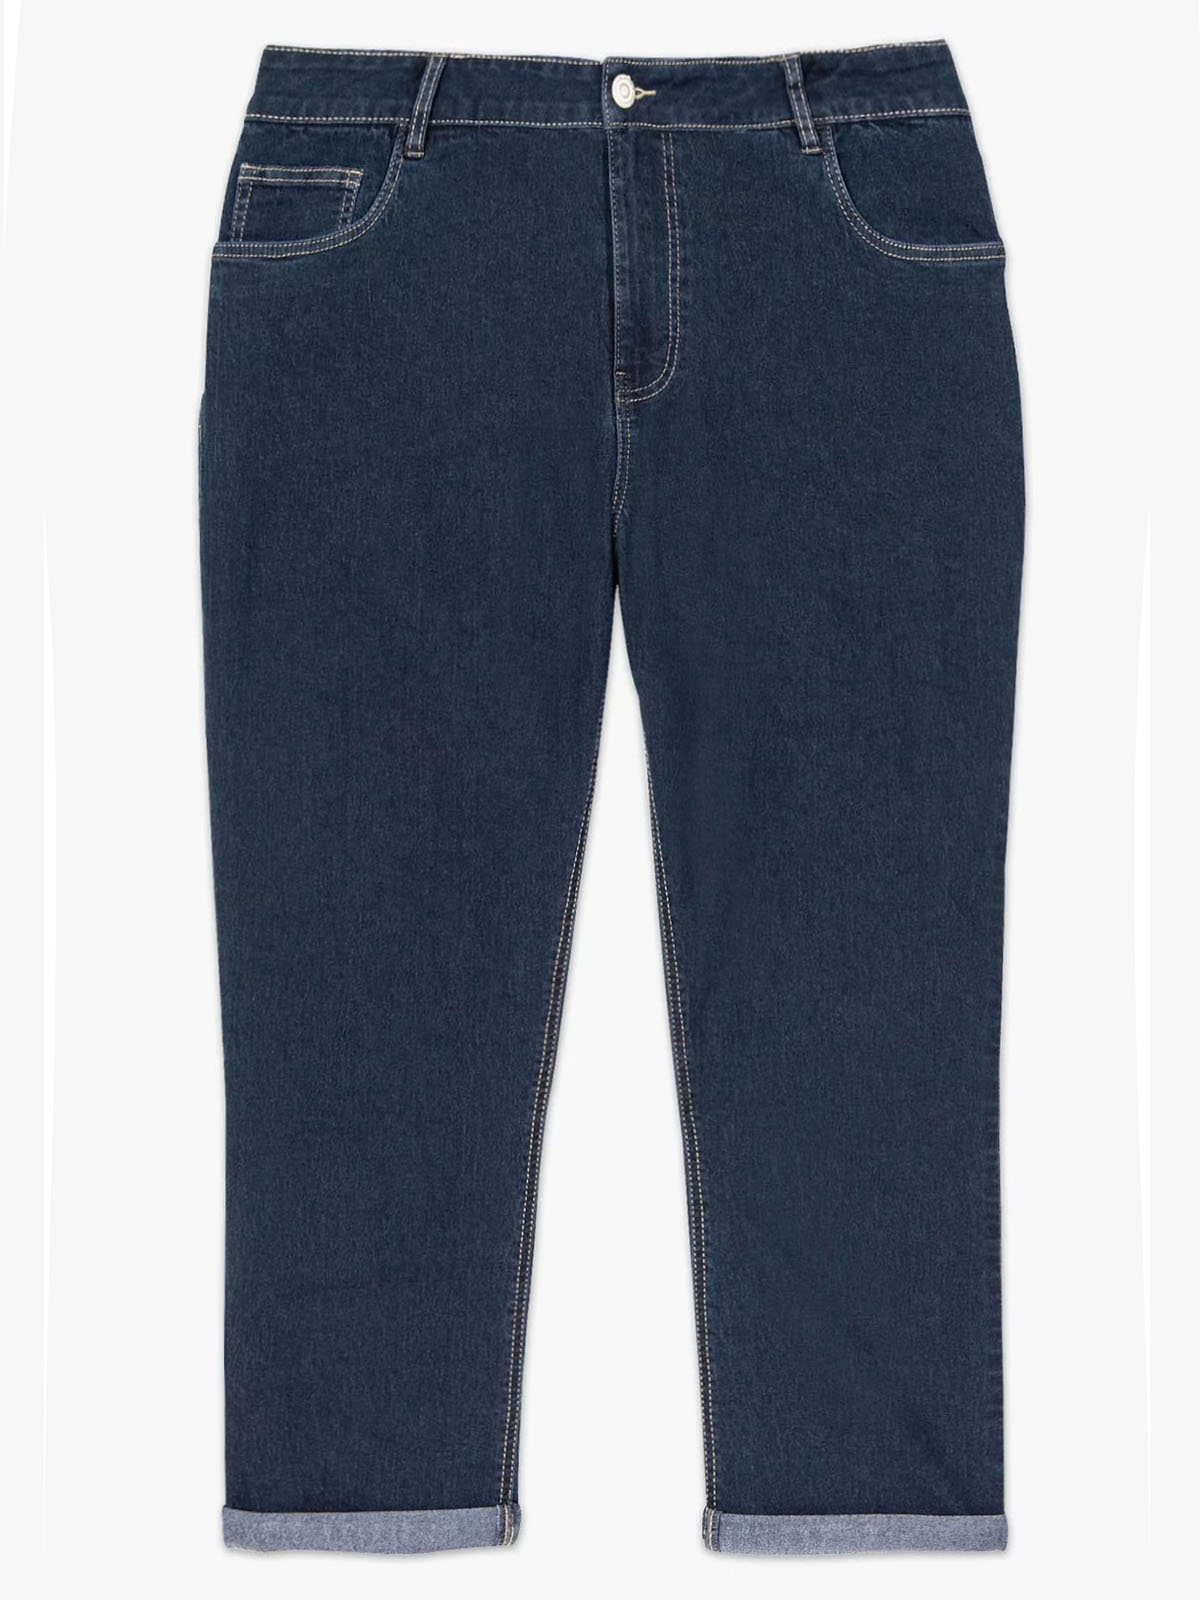 Indigo Fusion Womens Capris Size 16 Denim Capris Jeans Pants